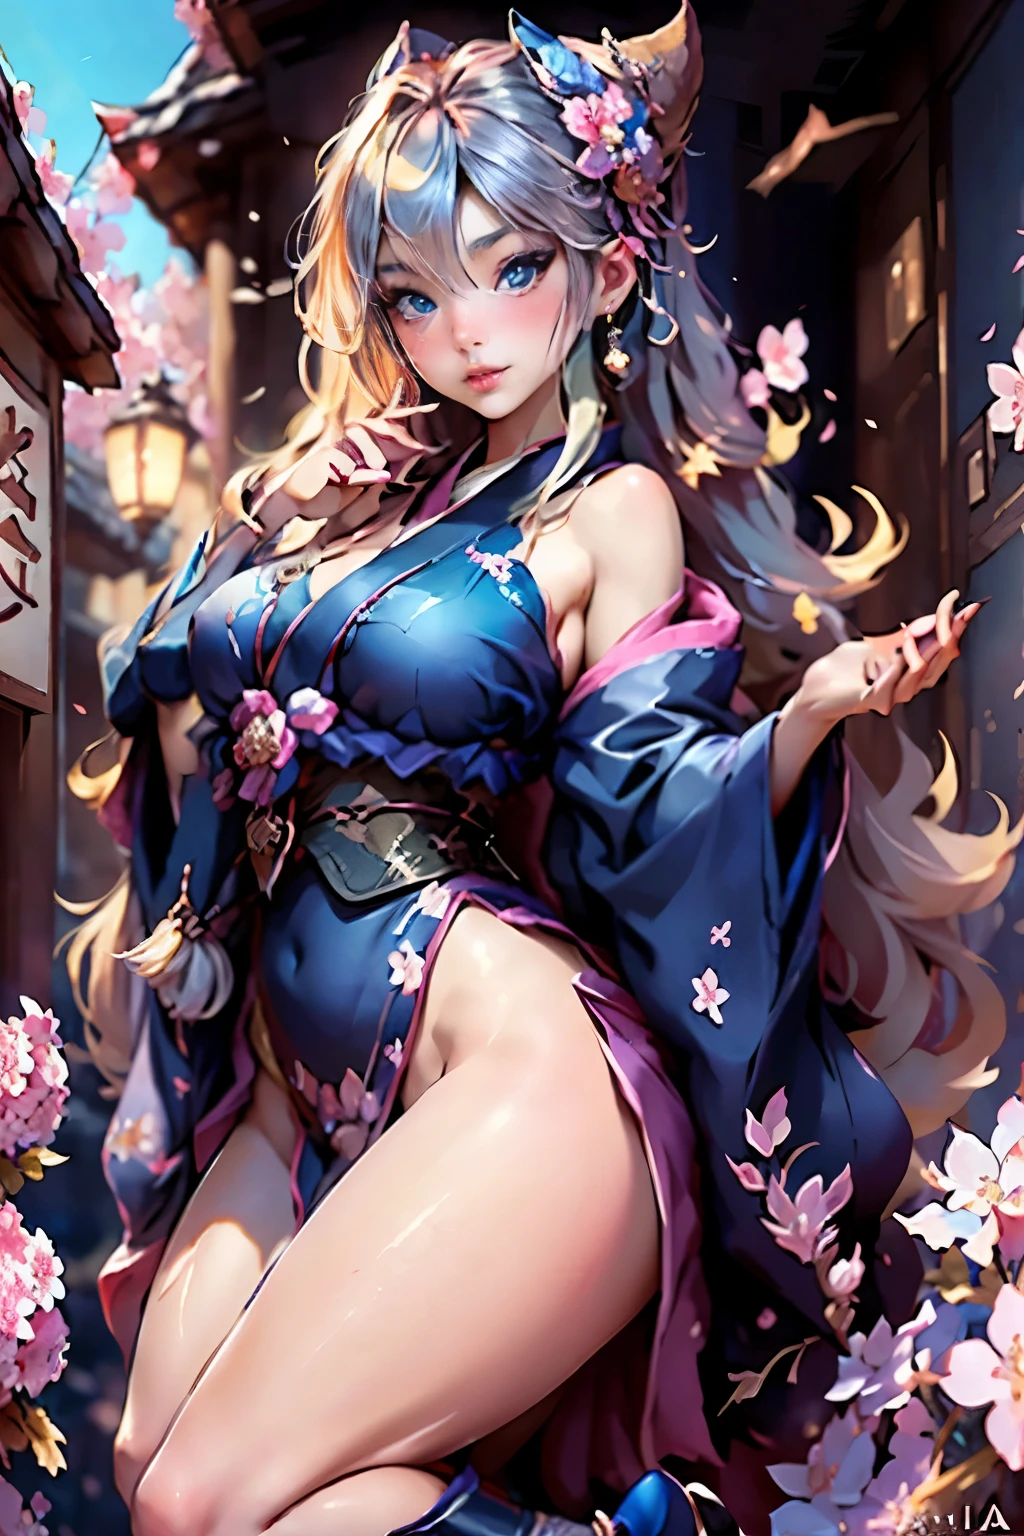 全身,完整计划,SFW,画中的俄罗斯女神公主是一位艺伎，有着明亮的蓝色大眼睛和蓬松的北欧长睫毛，身材完美优雅，一头蓬松的长波浪发，呈明亮的小麦色，在小巷中茁壮成长，背景是盛开的日本粉色樱花，身着鲜艳的海军蓝色和服，日本鞋也呈现出鲜艳的海军蓝色, 女孩的蕾丝和服图案精美，带有超短的直率剪裁..., 透过布料可以看到凸起的小乳房，女孩的耳朵上戴着漂亮的耳环，耳环上镶着珍贵的海军蓝蓝宝石，在灯光下闪闪发光... 女孩所在的土地上散落着樱花..., 场景极具艺术性, 高分辨率, 锐利的焦点, Migjorni-V5艺术风格, 超写实主义, 完美的比例, 黄金比例的照片, 拐杖, 轮廓, 阳光, 柔和的光泽, 柔焦, 通过单片眼镜实现照片式平滑对焦.